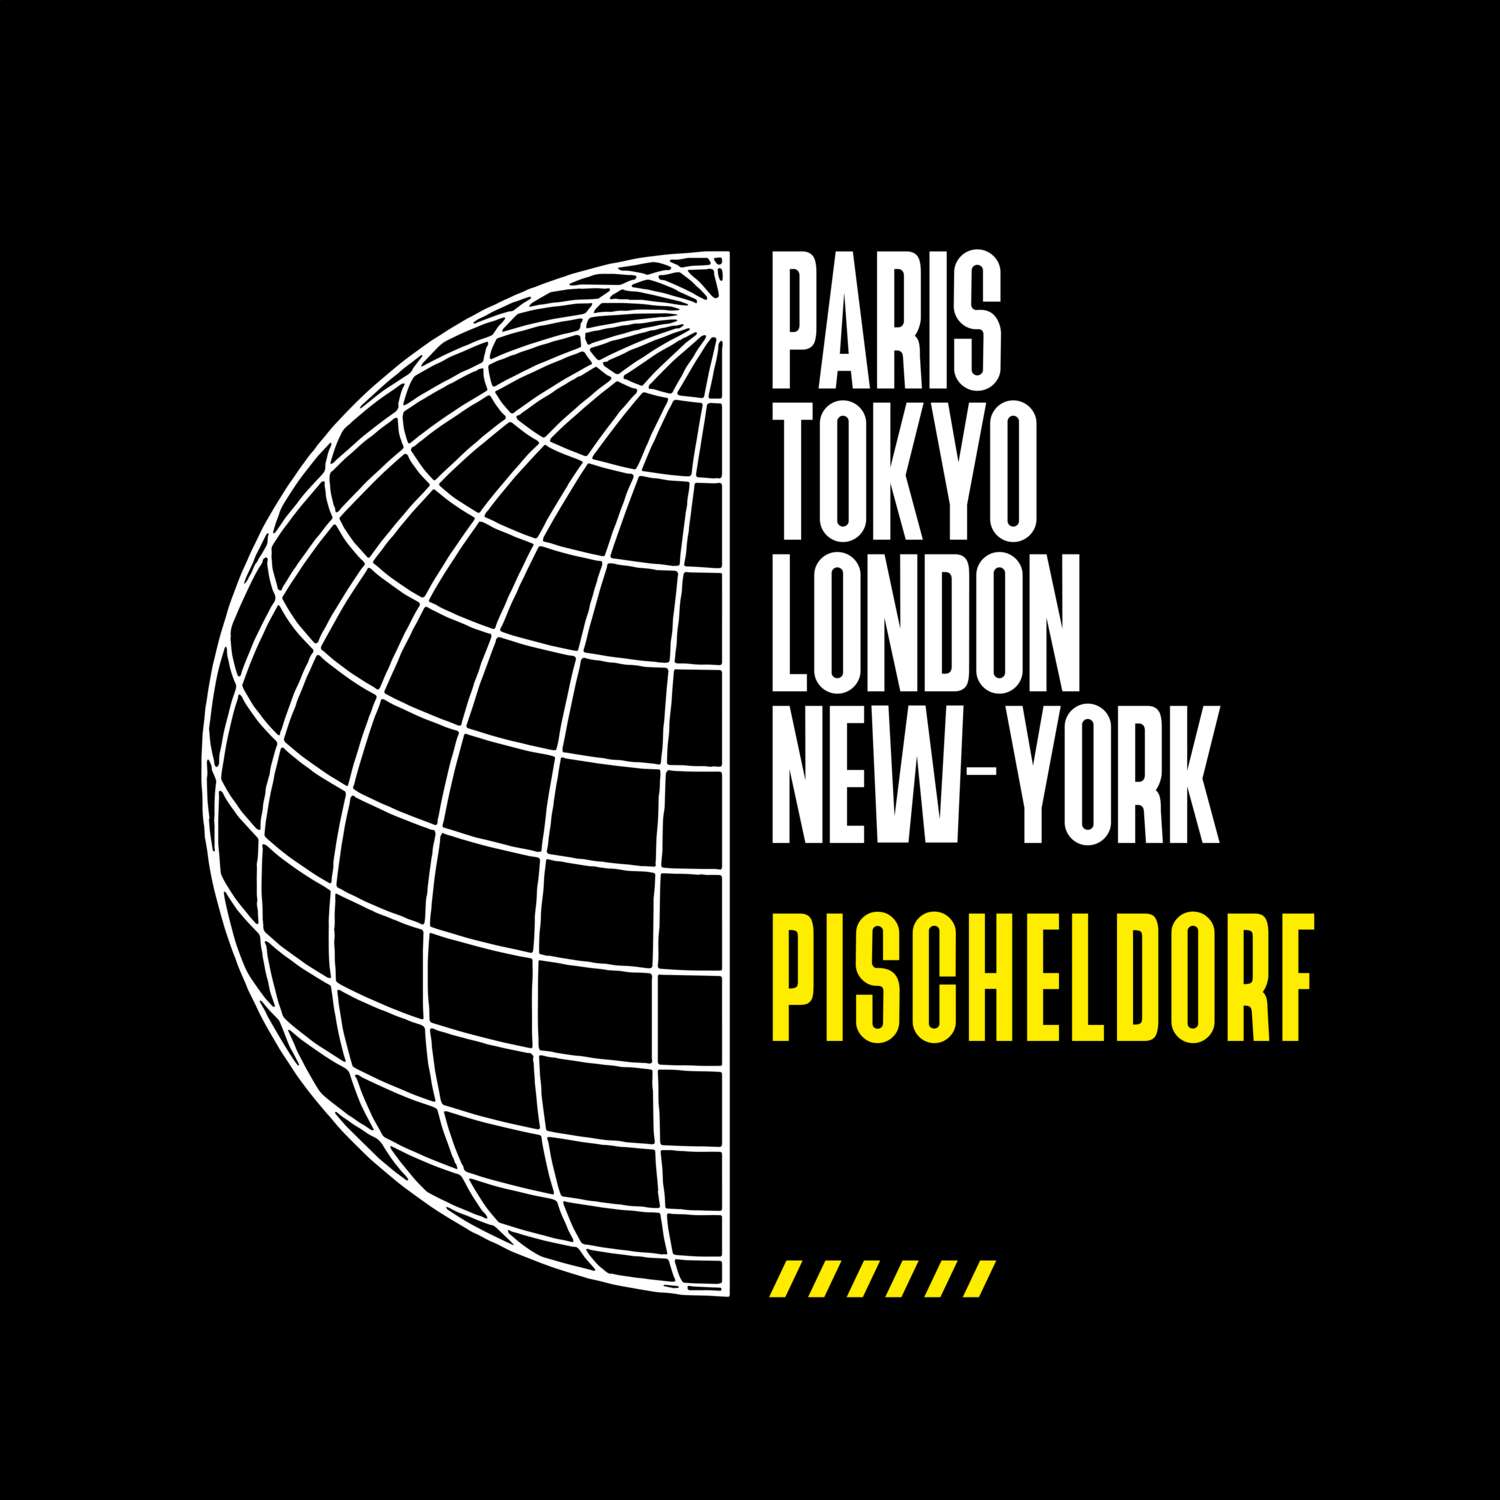 Pischeldorf T-Shirt »Paris Tokyo London«